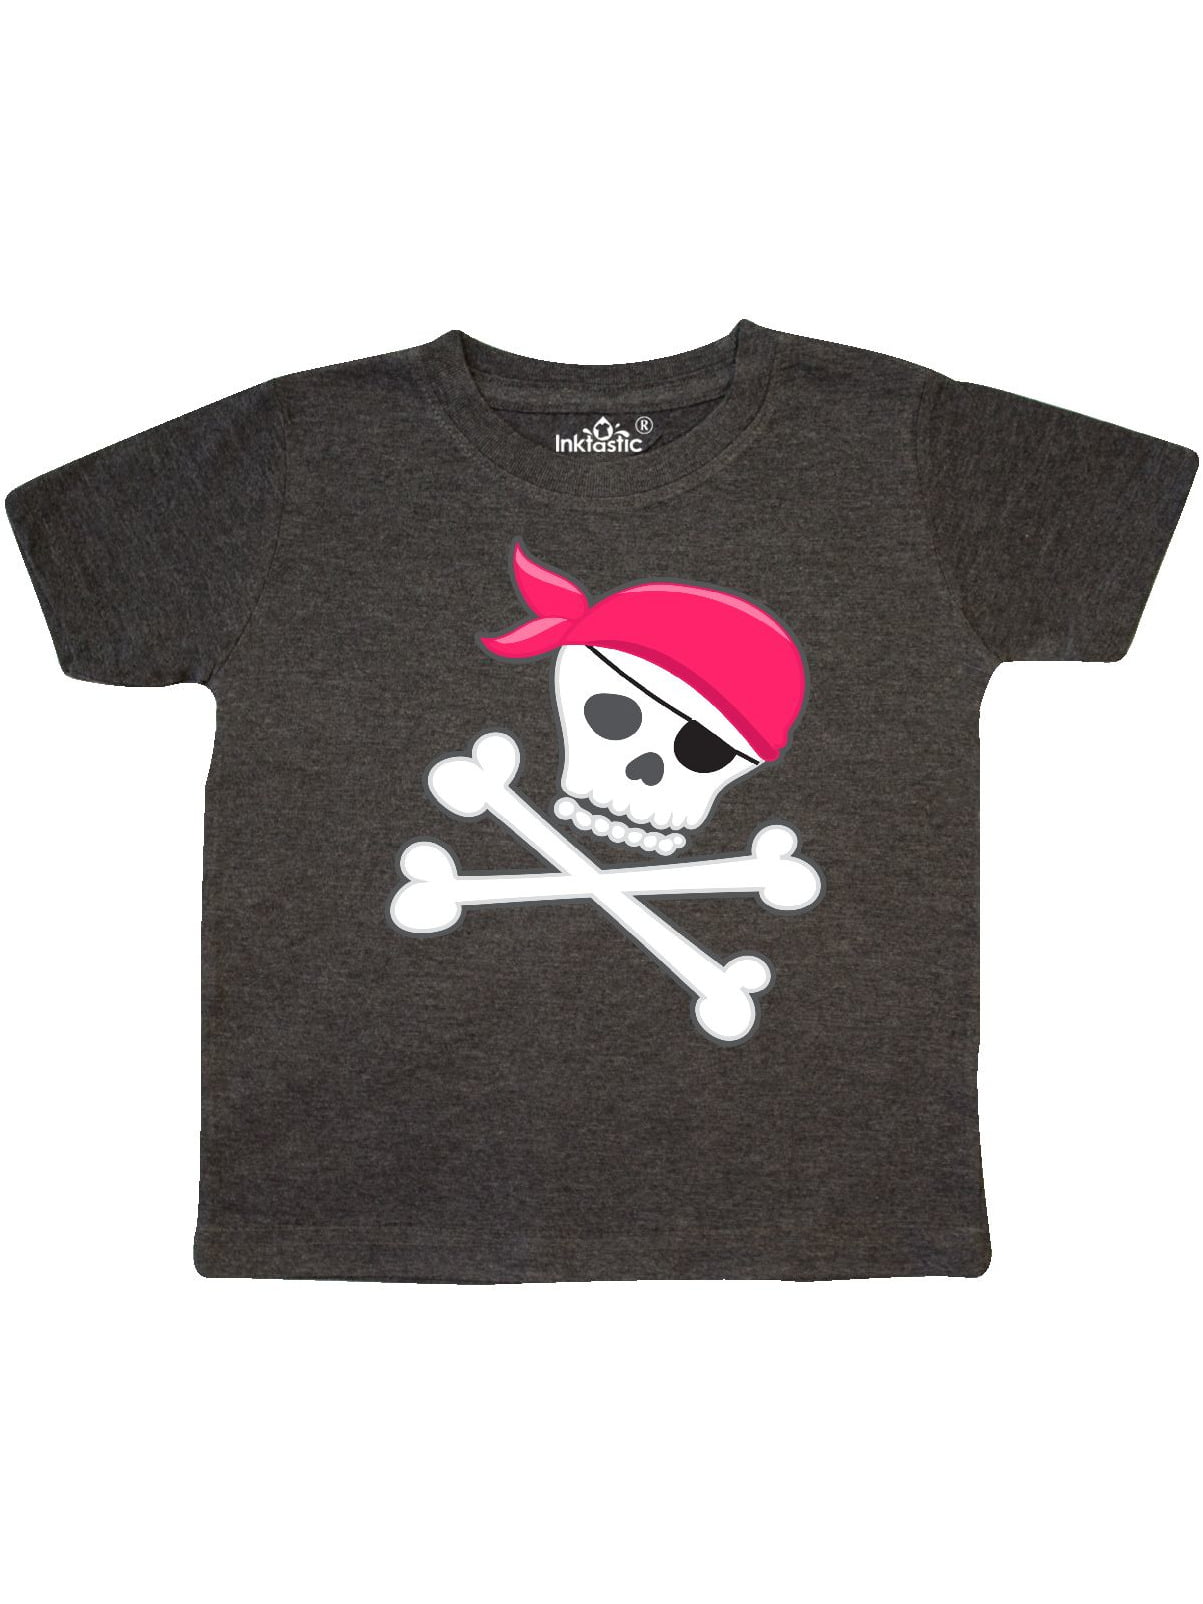 Unisex Skull & Crossbones Toddler T-Shirt 